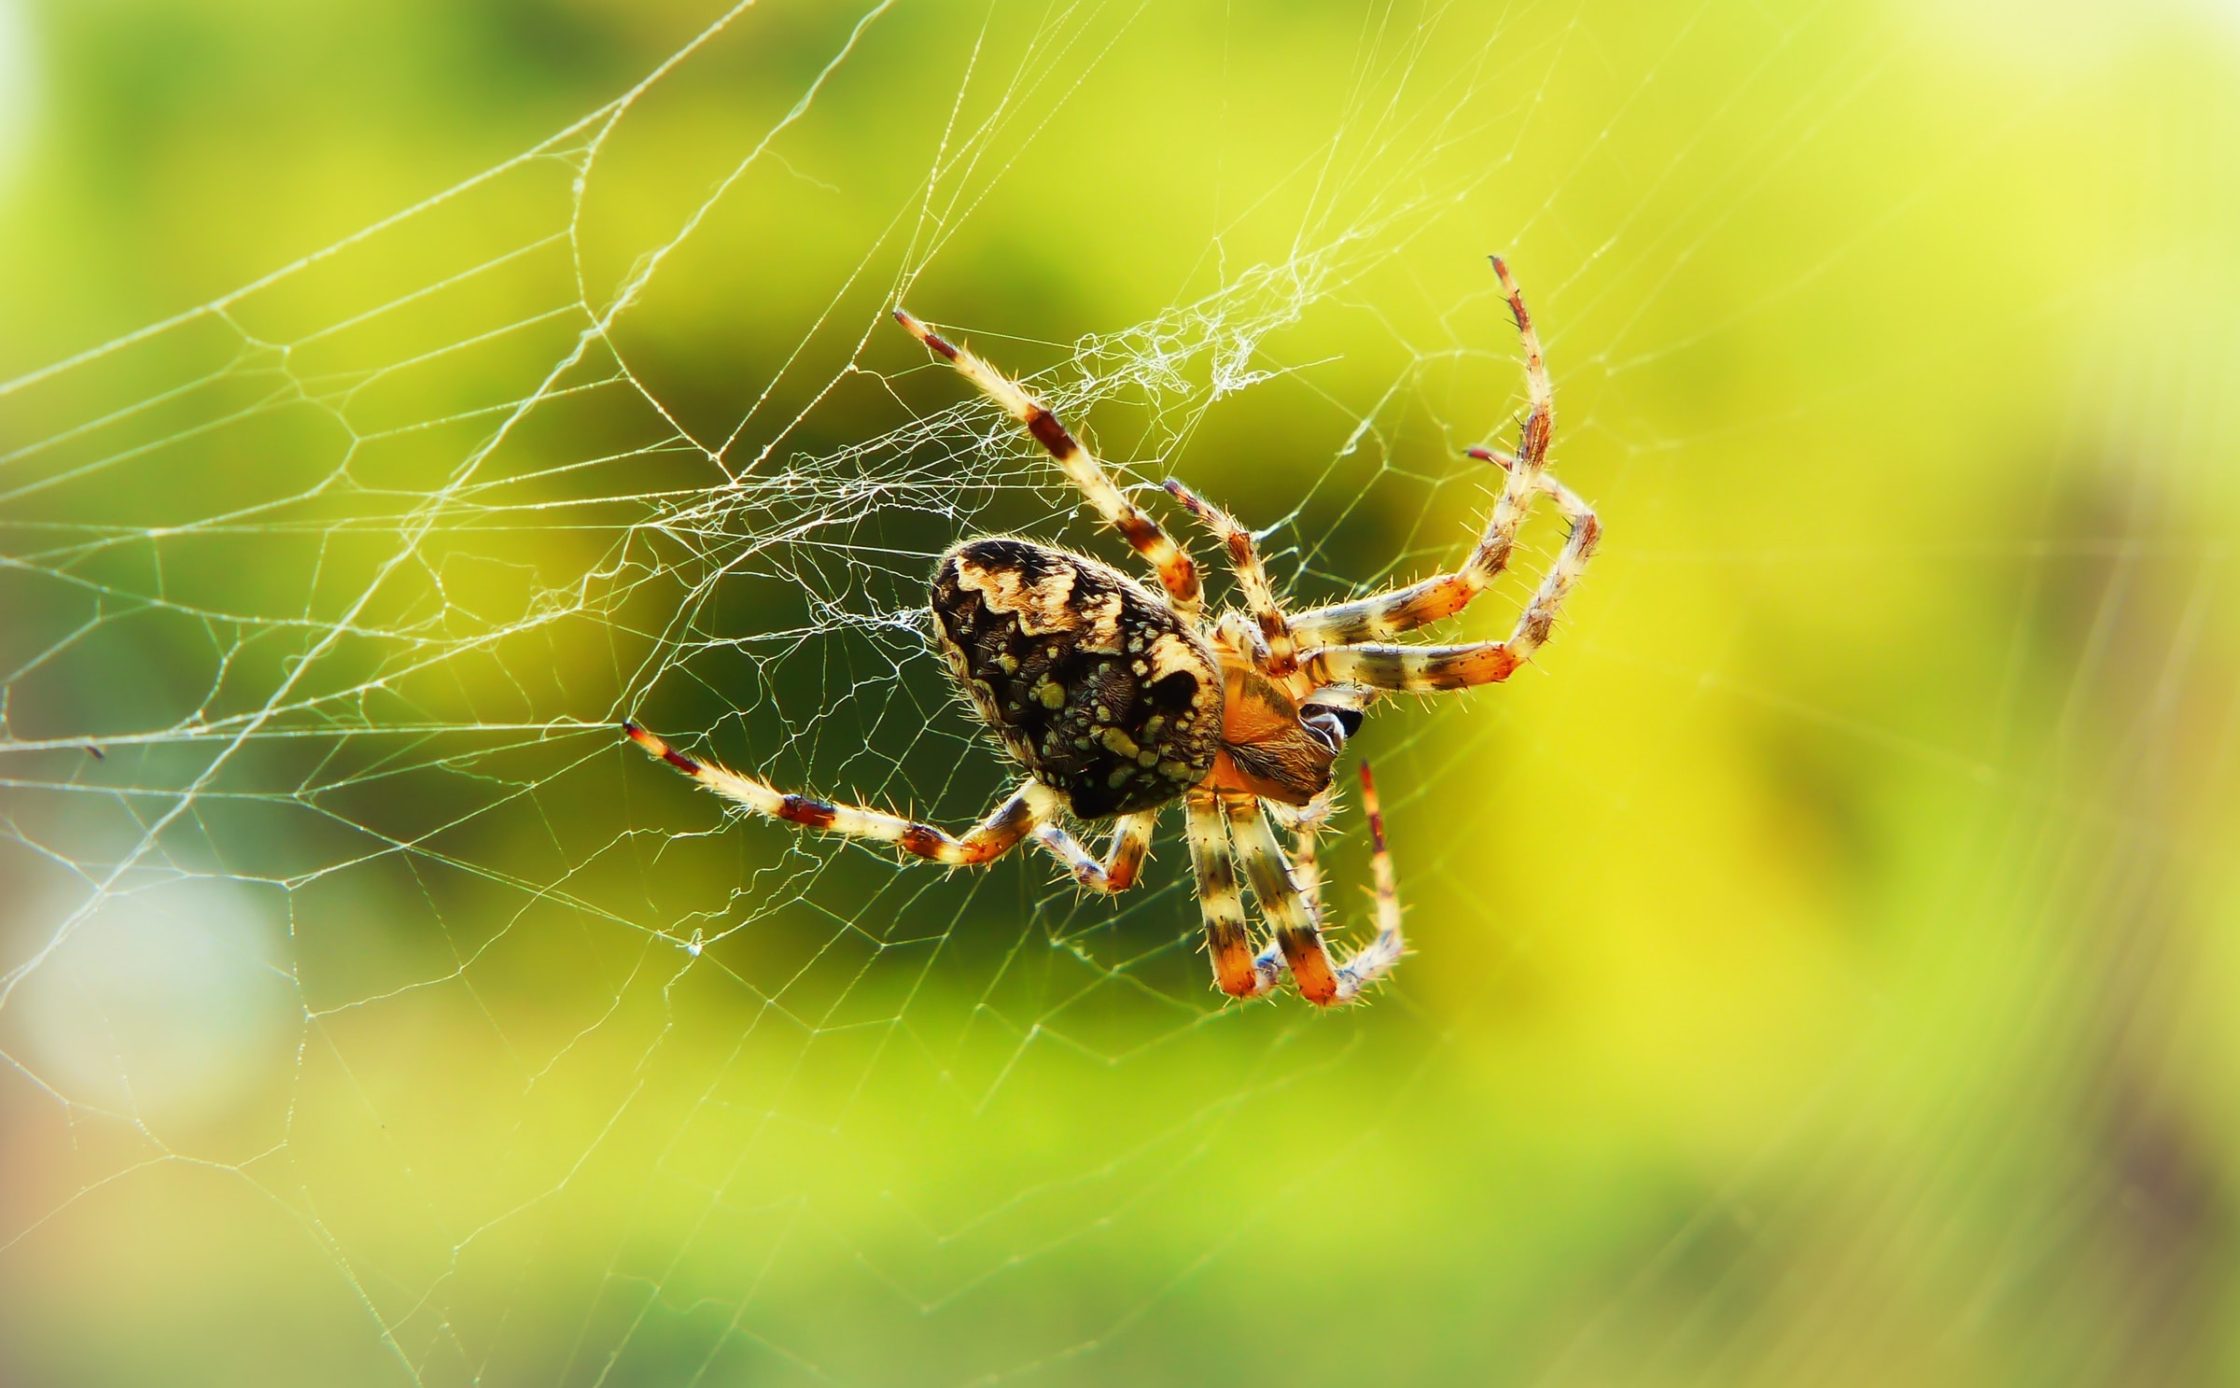 Orb weaver spider in spiderweb